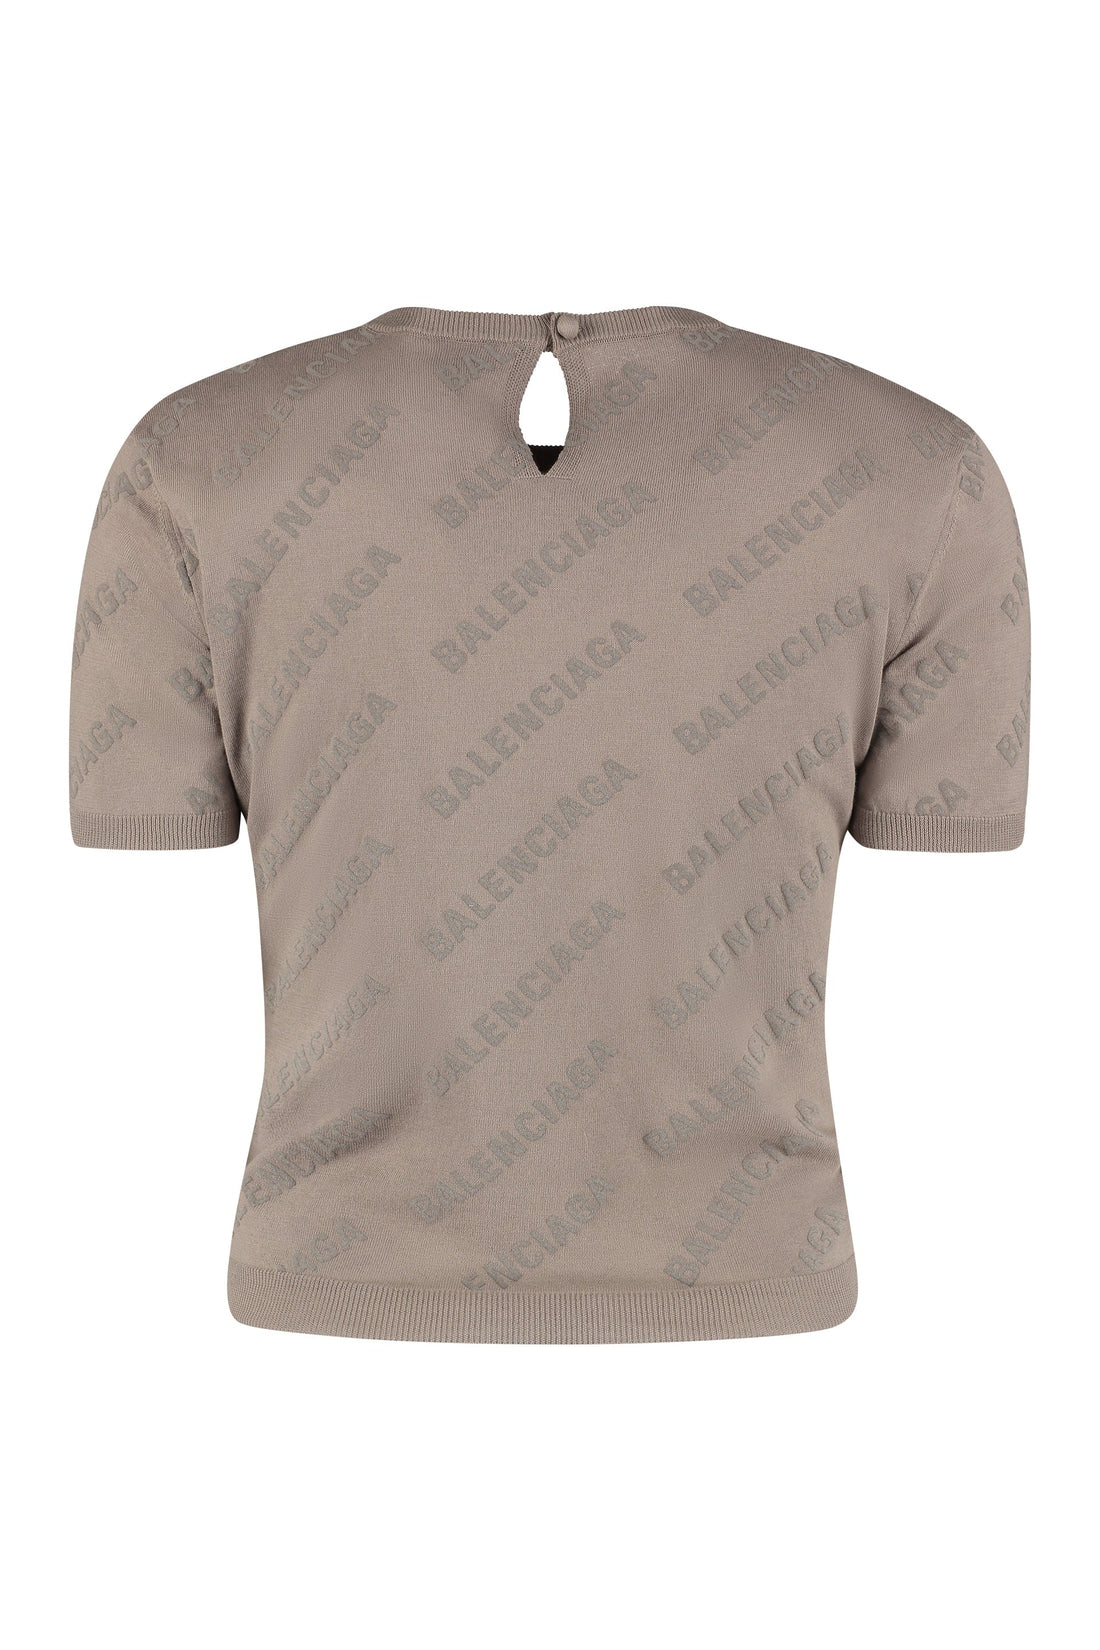 Balenciaga-OUTLET-SALE-Cotton crew-neck T-shirt-ARCHIVIST